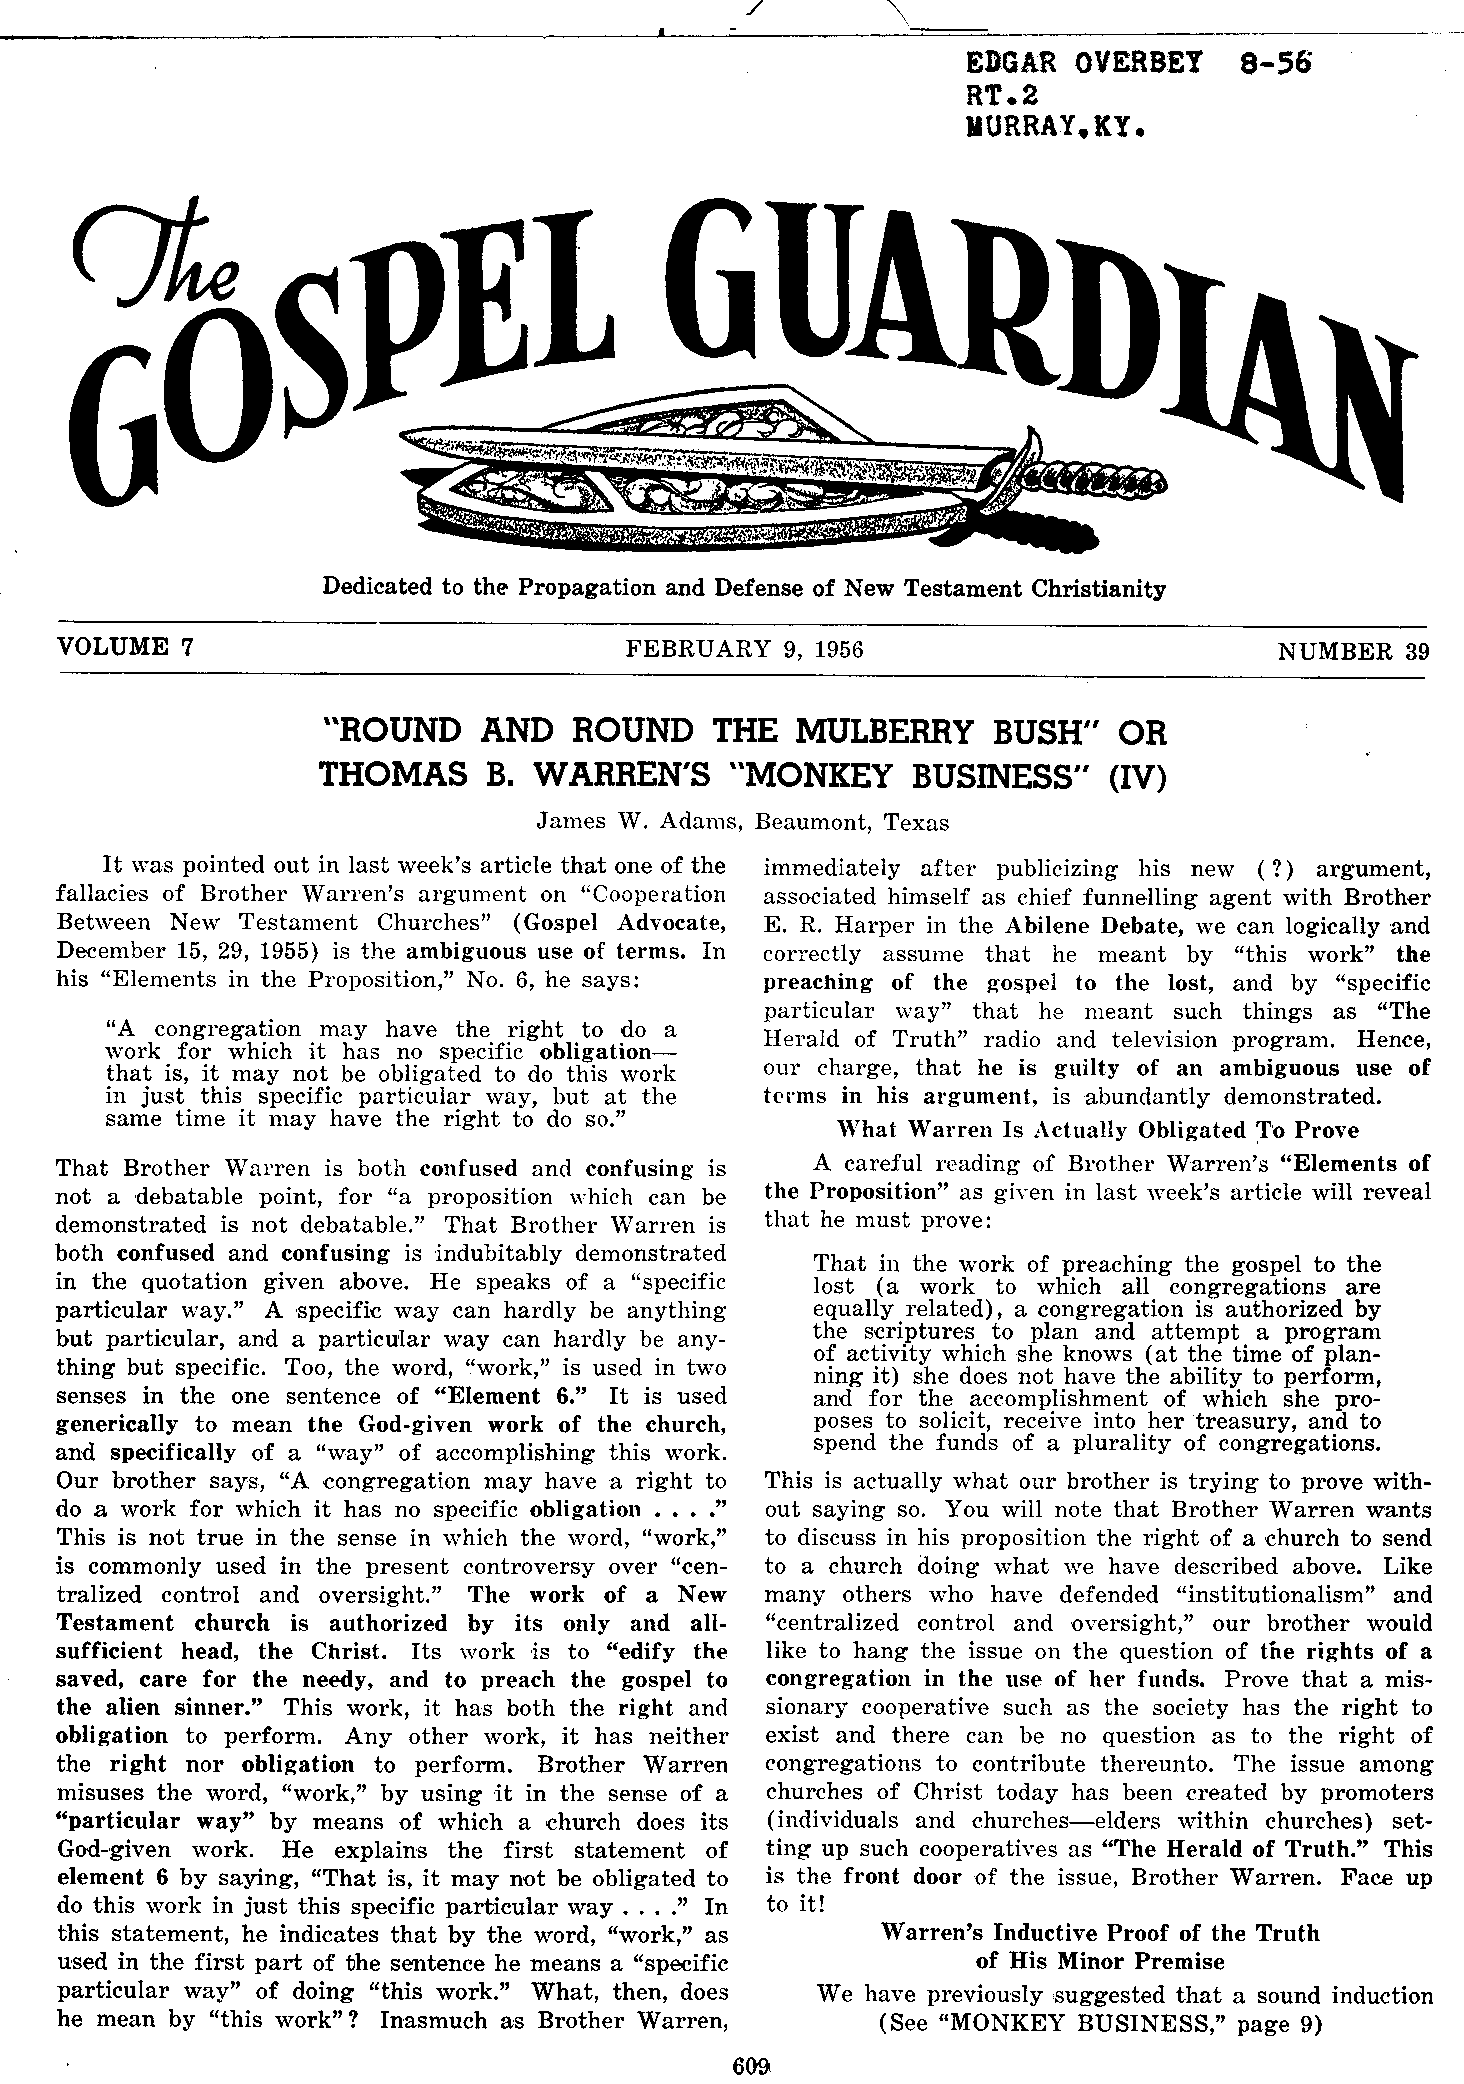 Gospel Guardian Original: Vol.7 No.39 Pg.1